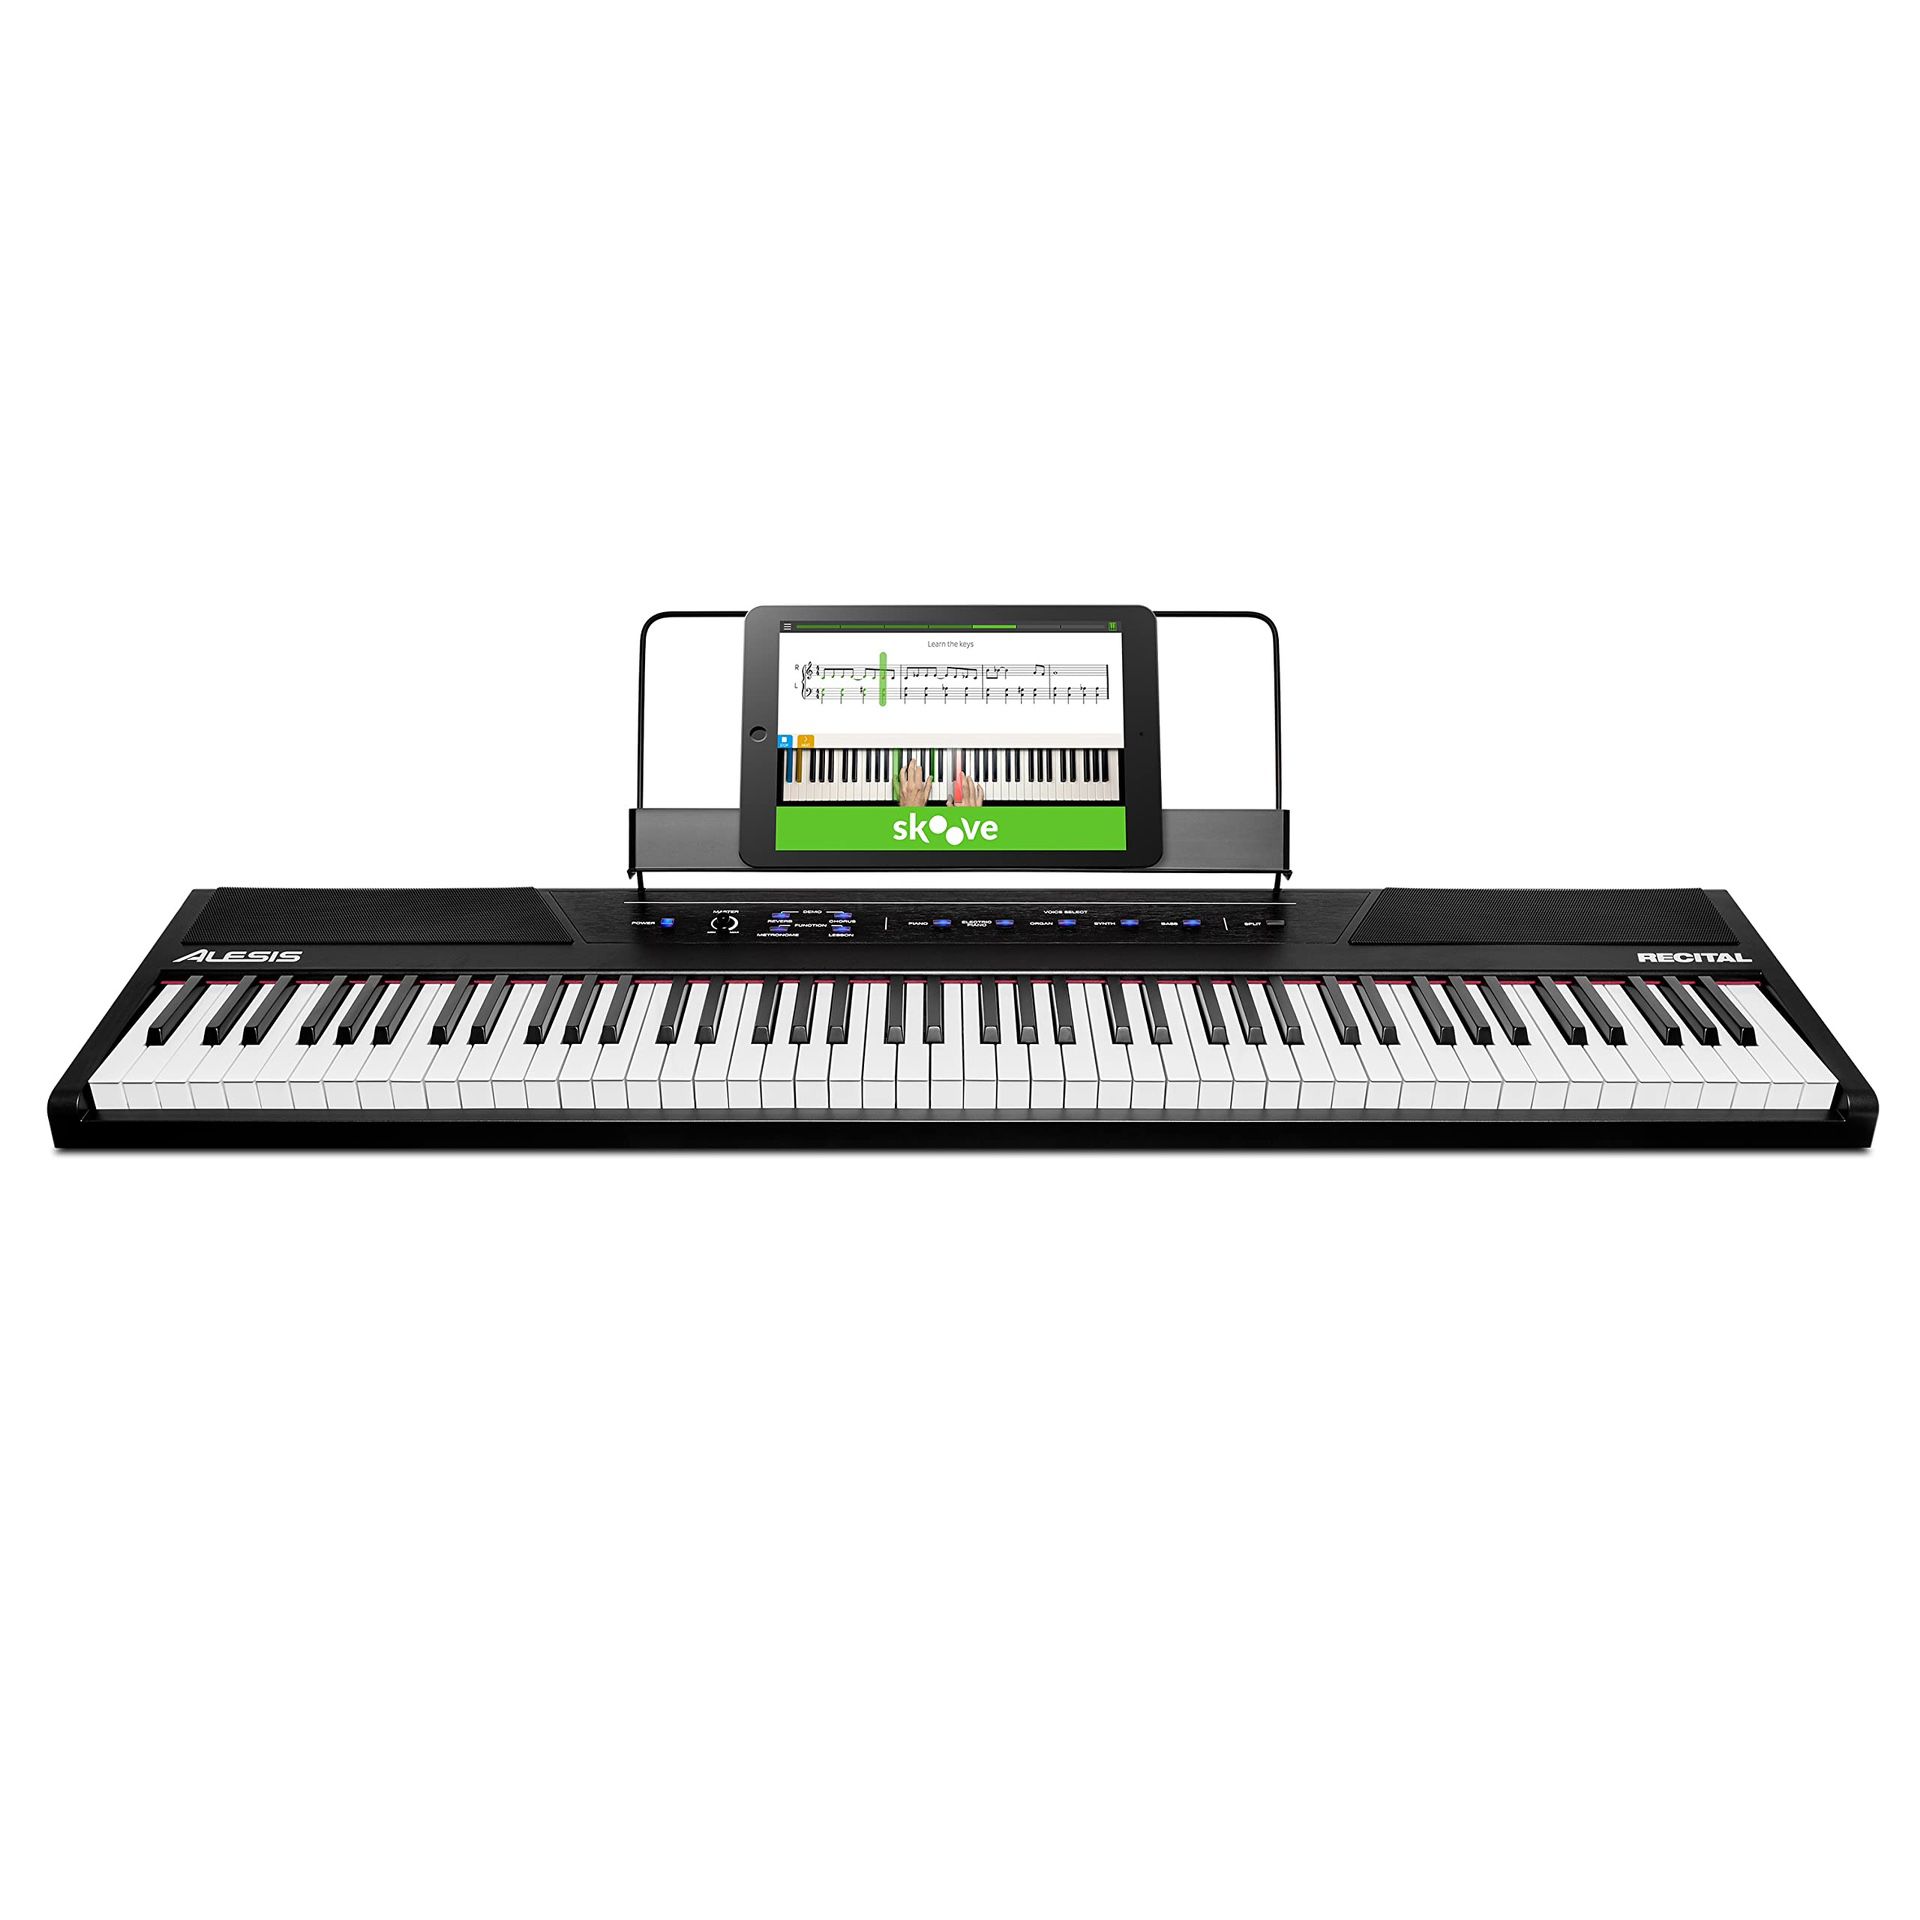 Alesia recital Digital Keyboard With 88 Full Sized Keys